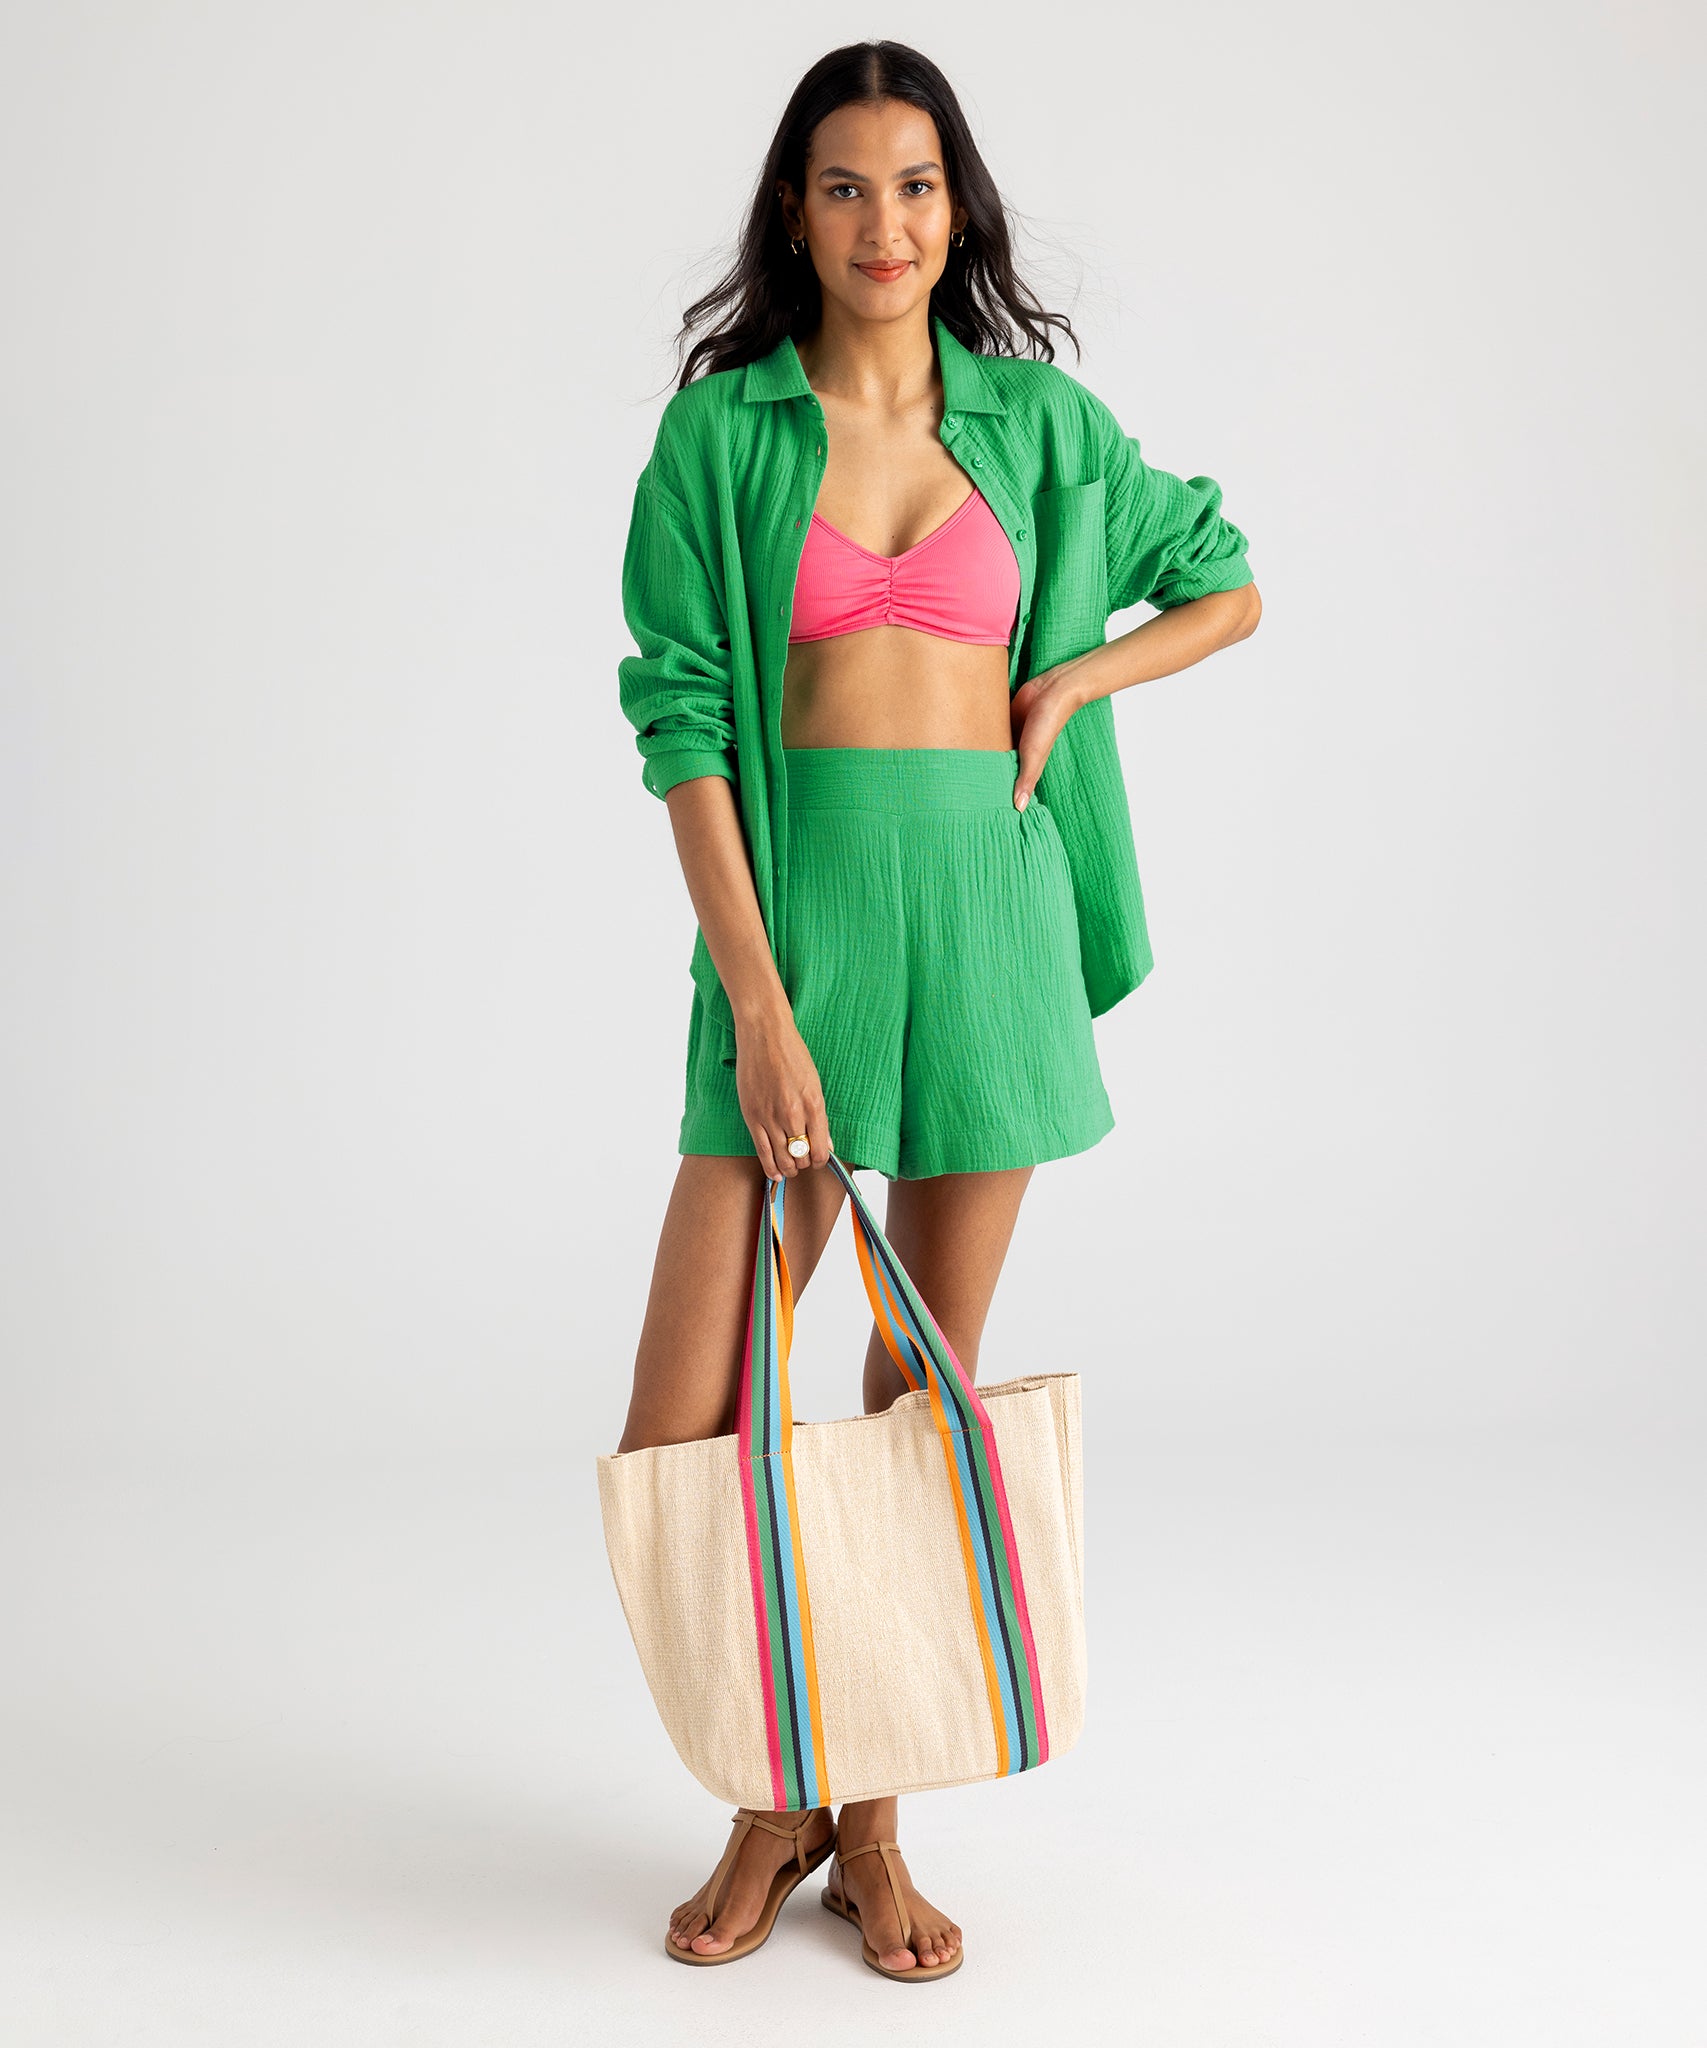 Dalia Beach Bag in color Multi on model